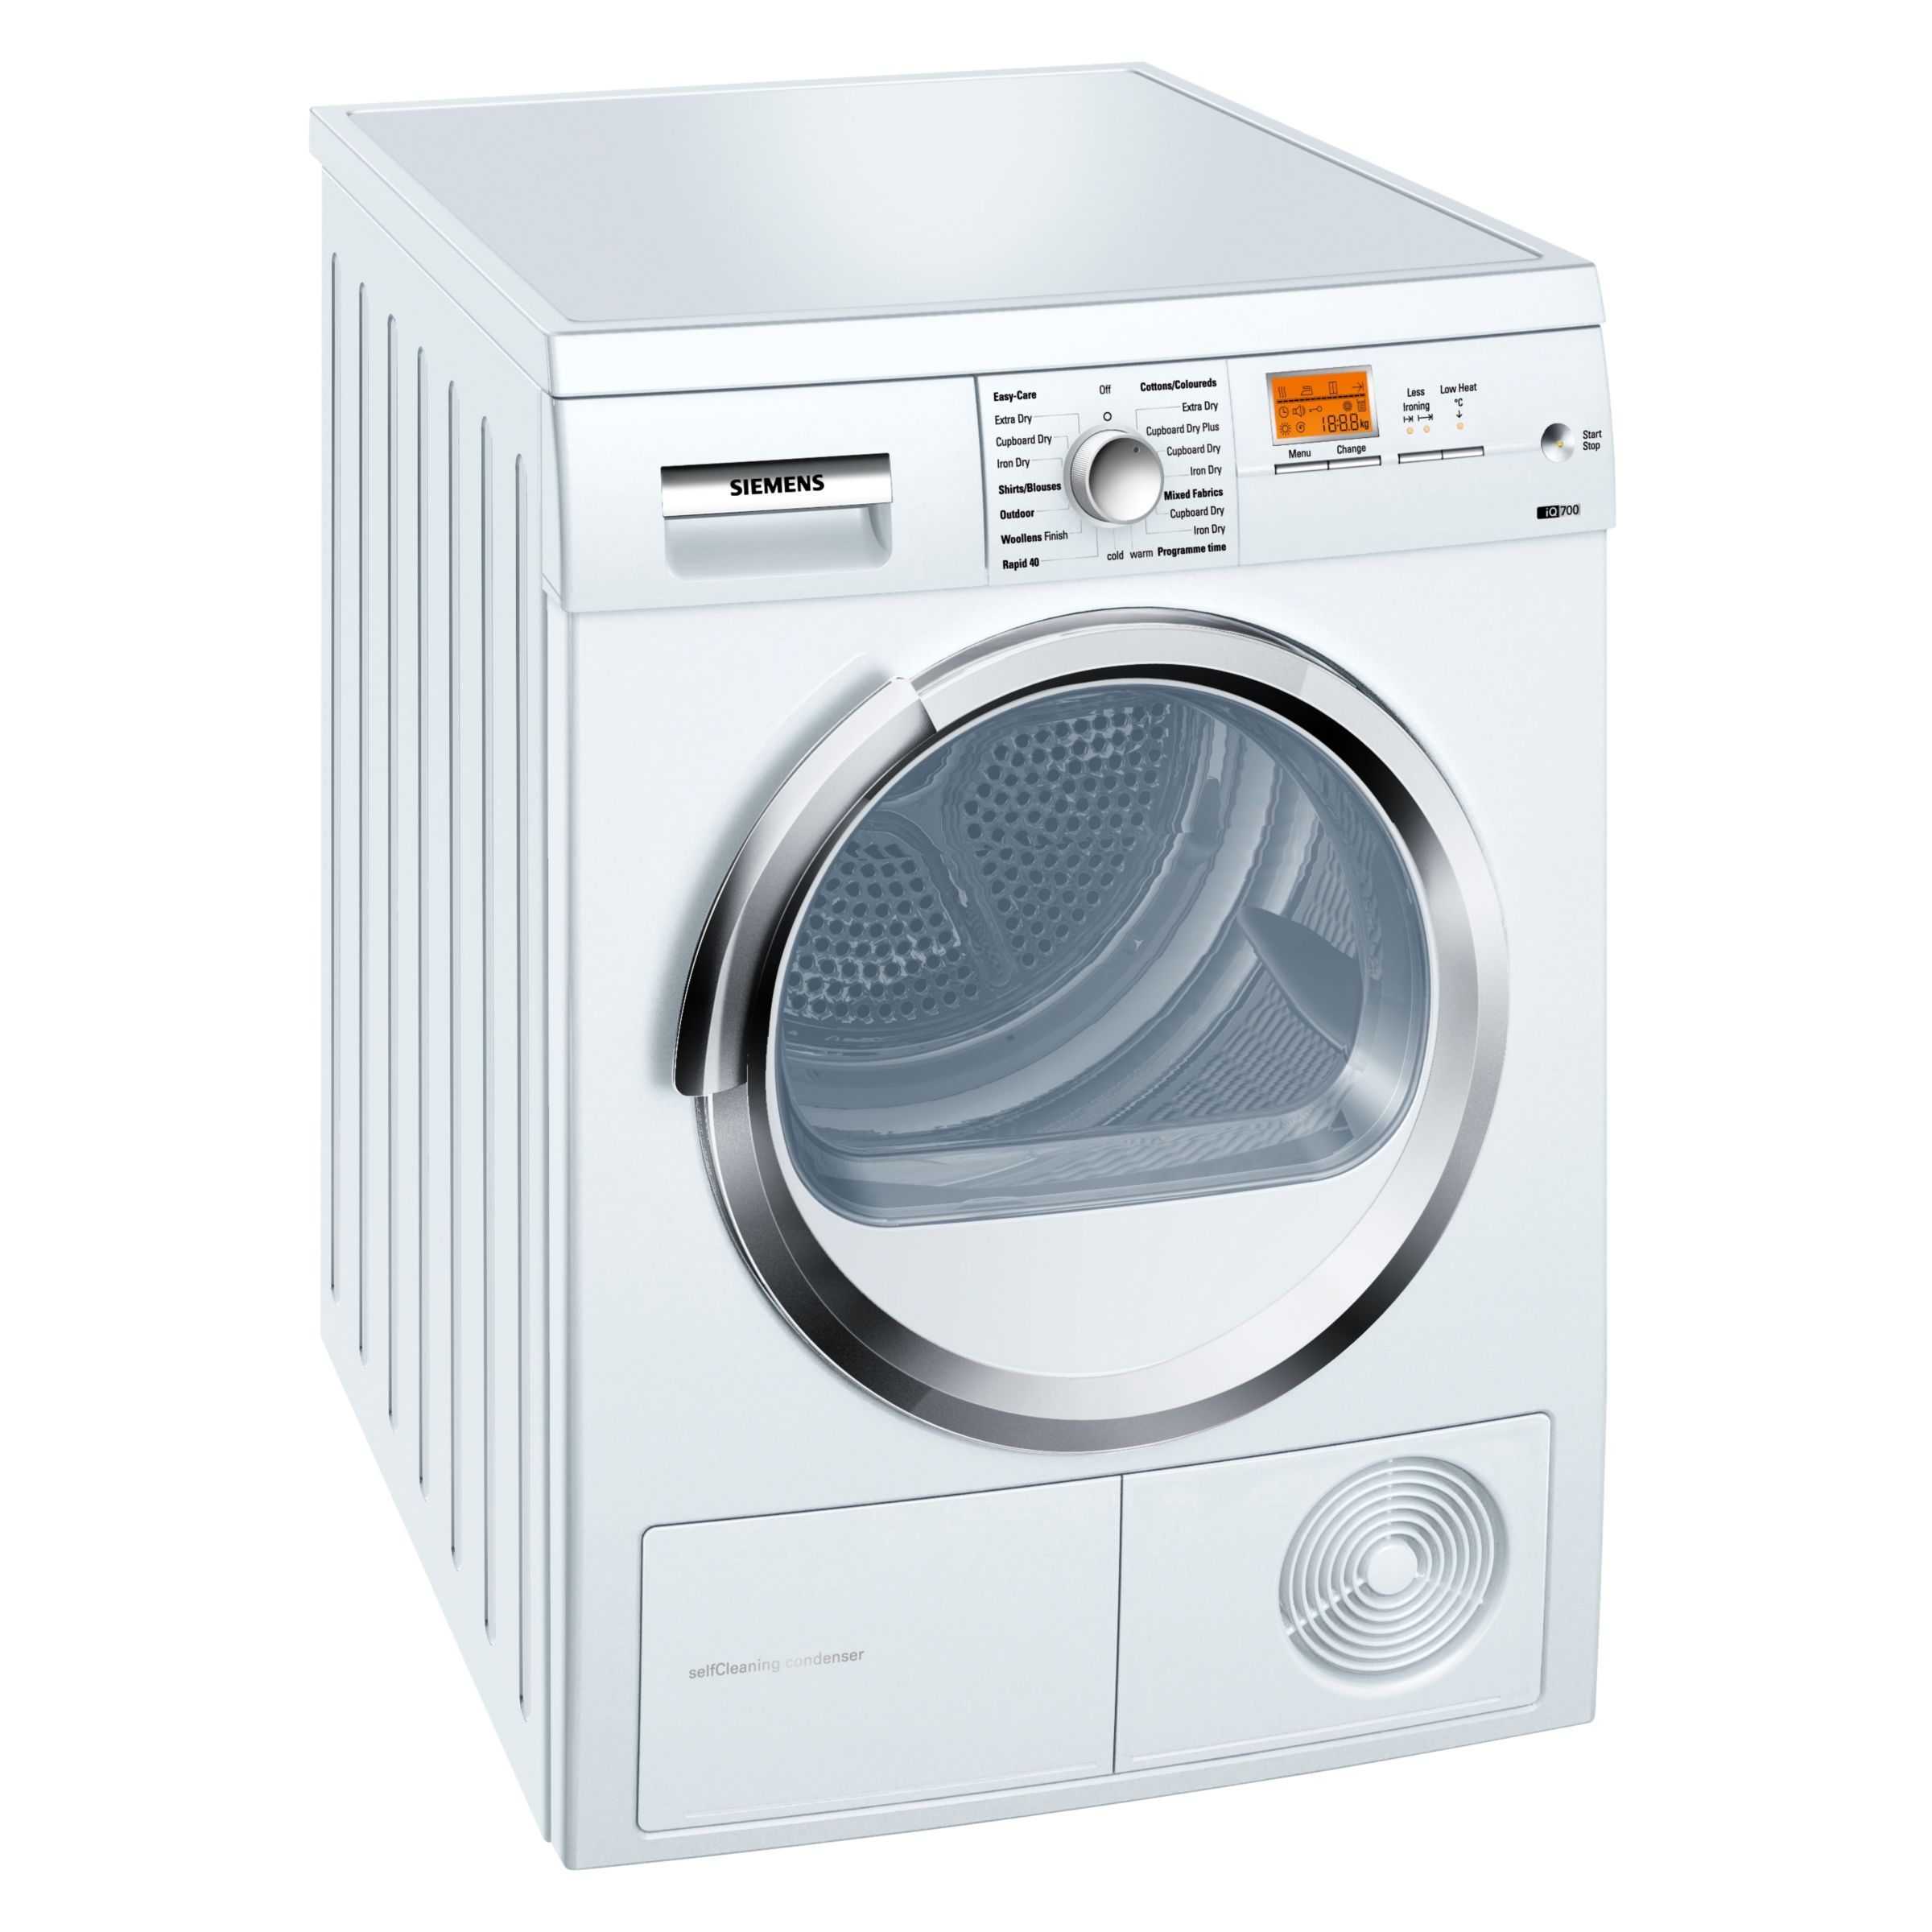 Siemens WT46W566GB Condenser Tumble Dryer, White at John Lewis